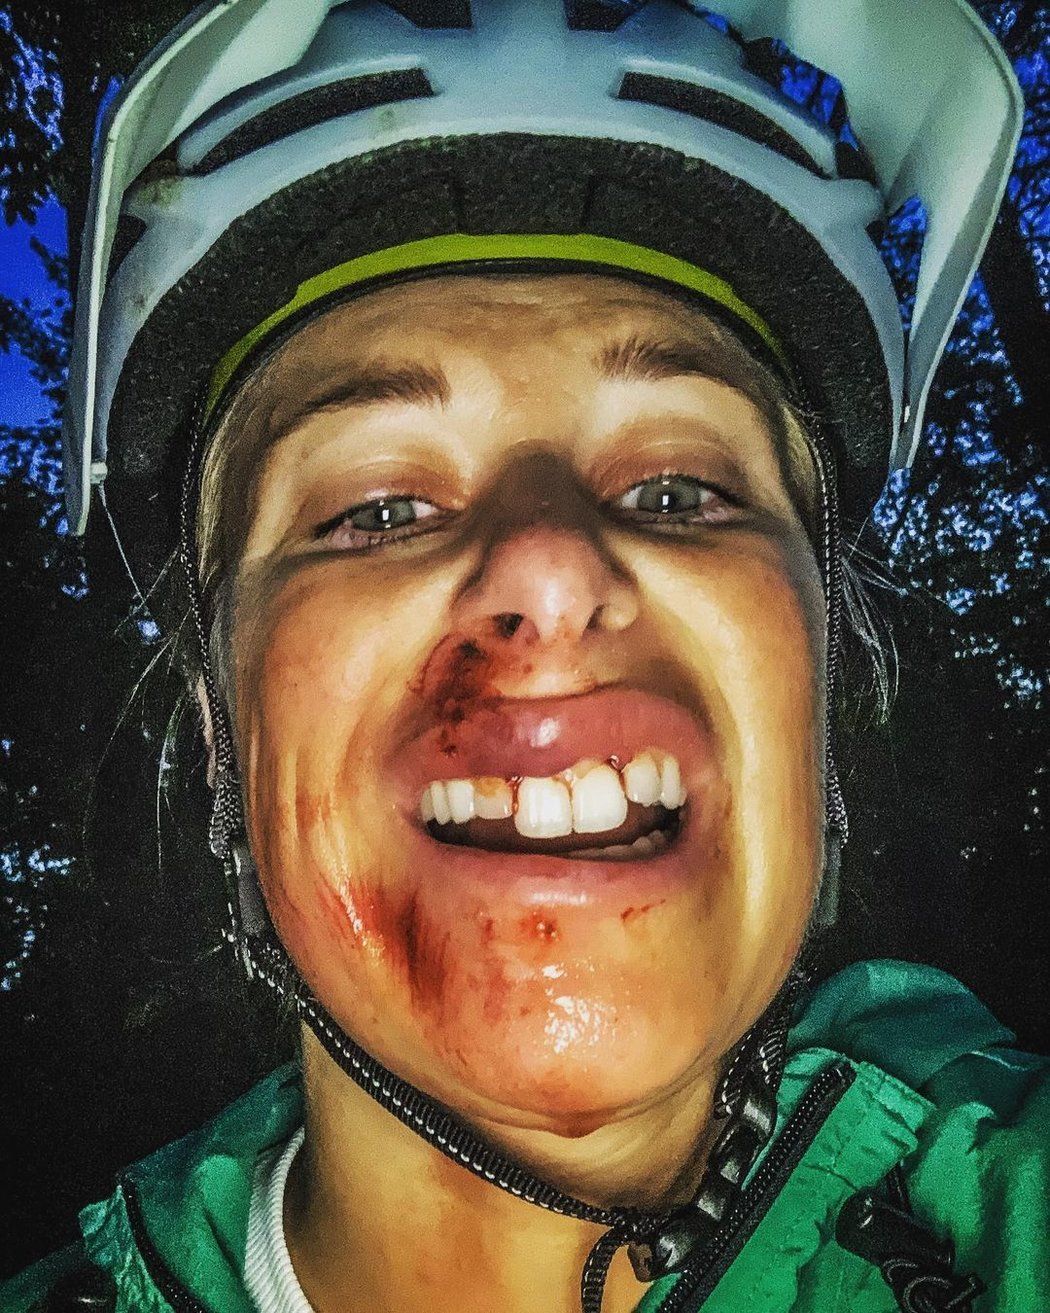 Takhle dopadla Andrea Sestini Hlaváčková po vyjížďce na kole.